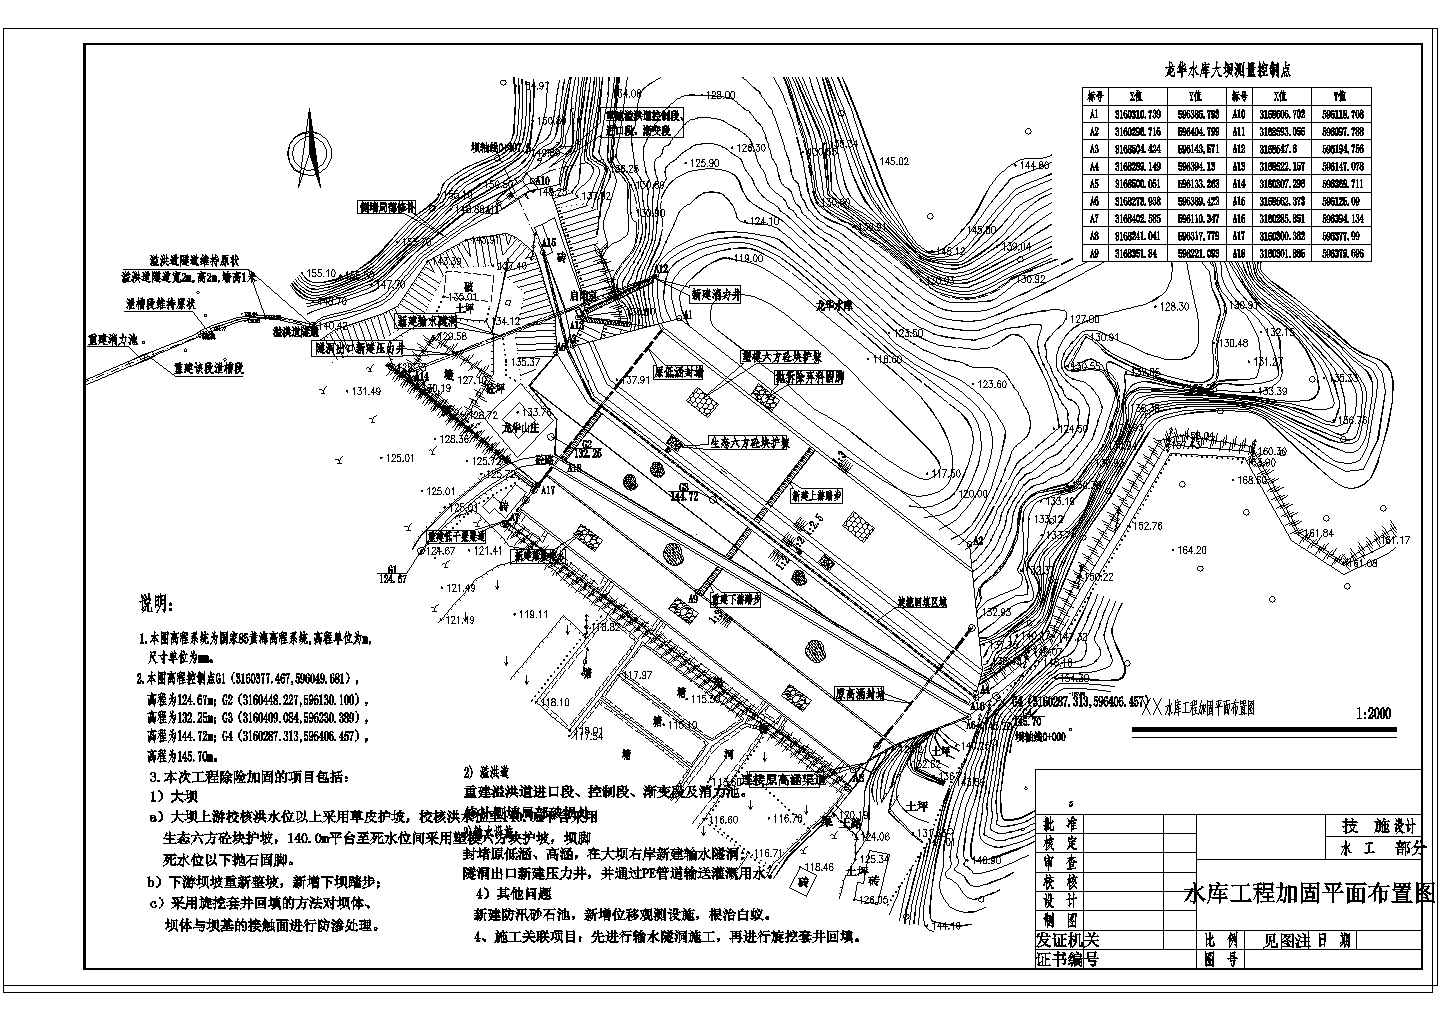 【湖南】小(一)型水库除险加固工程大坝施工图